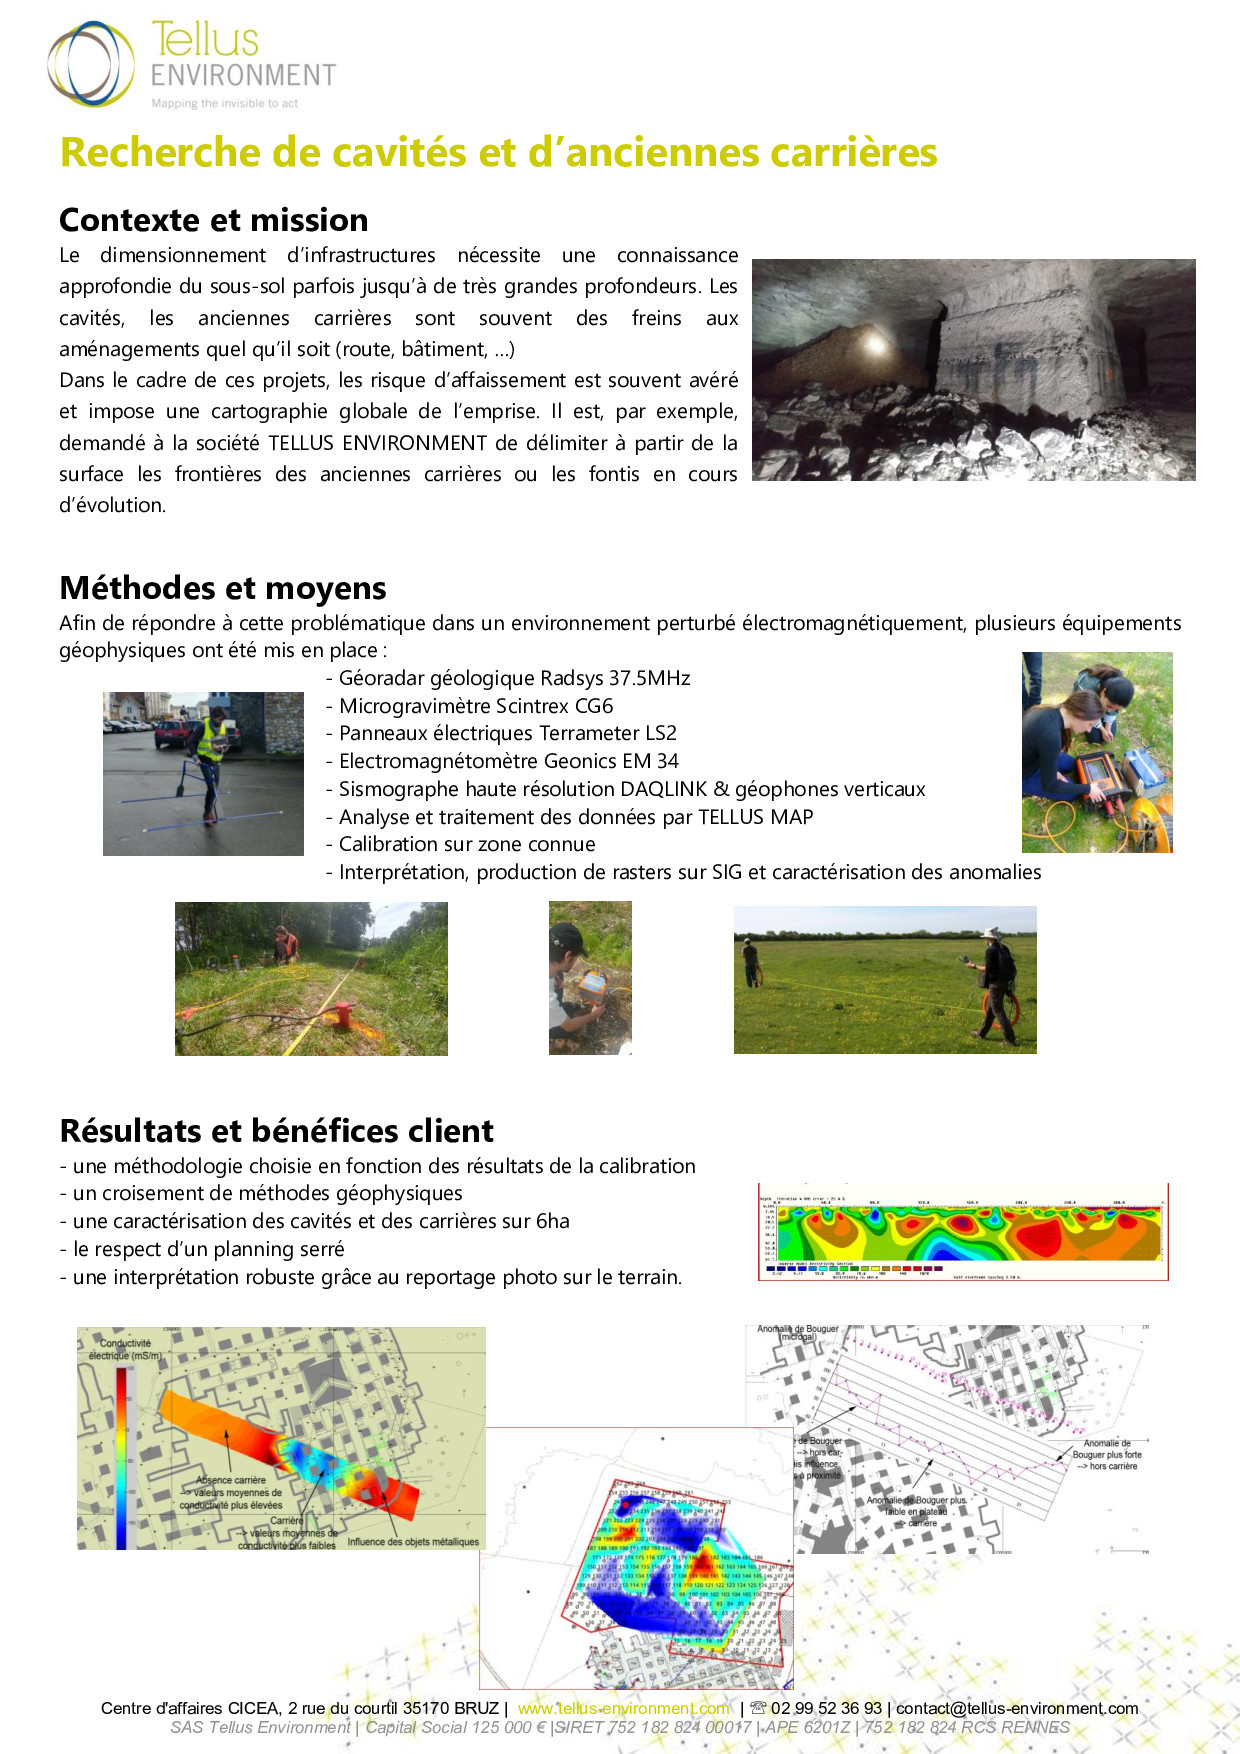 6 Tellus Environment Recherche de cavités Radar Microgravitimètrie EM Sysmique Electrique p001 - Tellus Environment